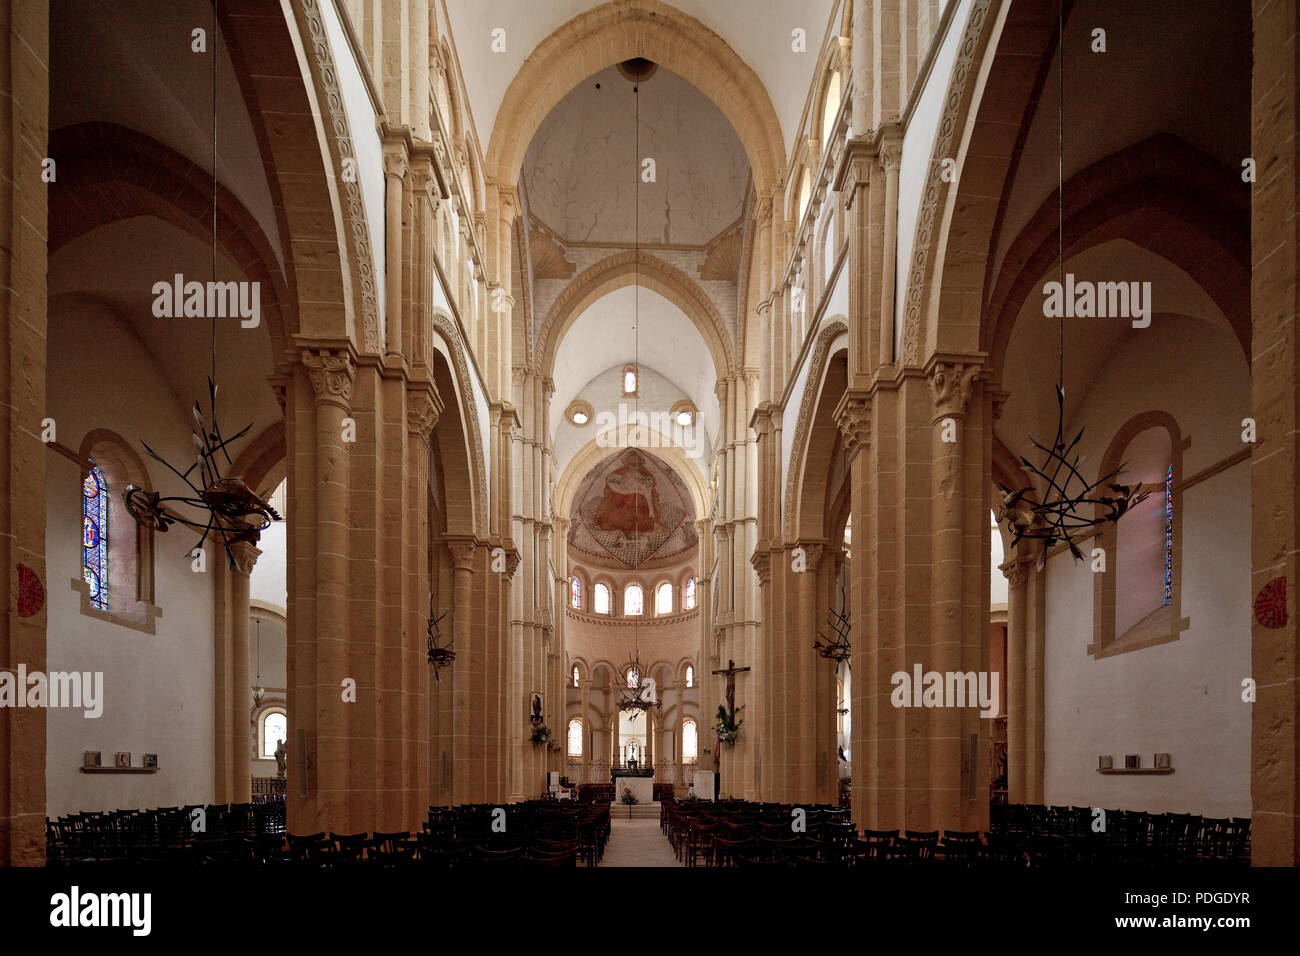 Frankr Paray-le Monial Burgund Basilika Sacre-Coeur Begonnen um 1100 Innenraum nach Osten Farbfassung 2005 nach dem Befund des 15 Jh Apsisfresko um 14 Stock Photo